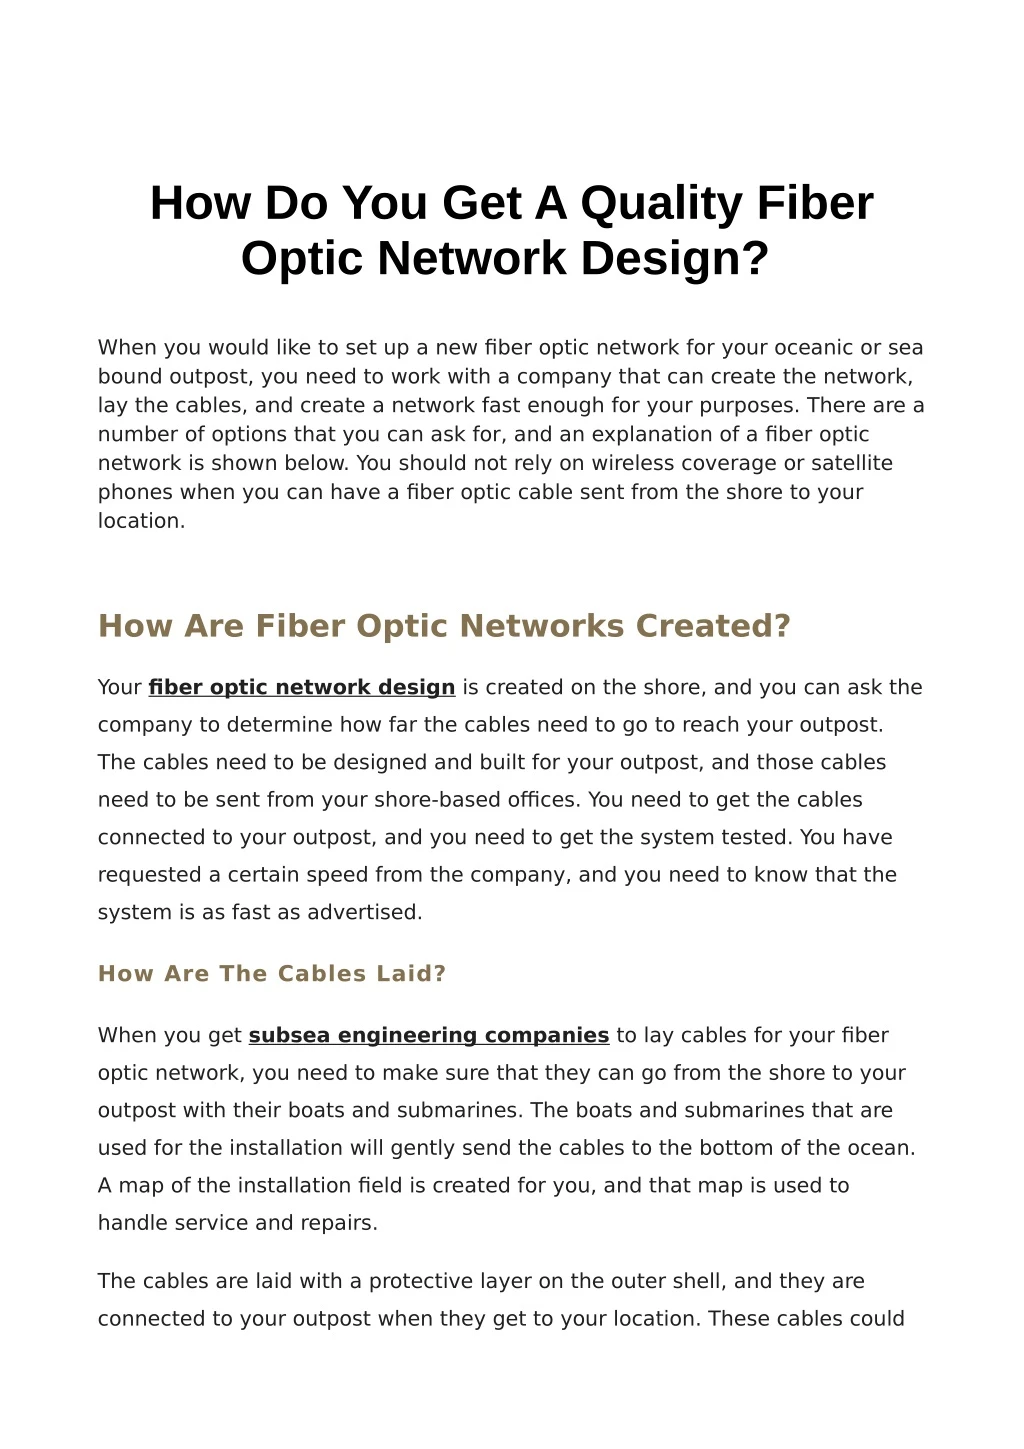 how do you get a quality fiber optic network